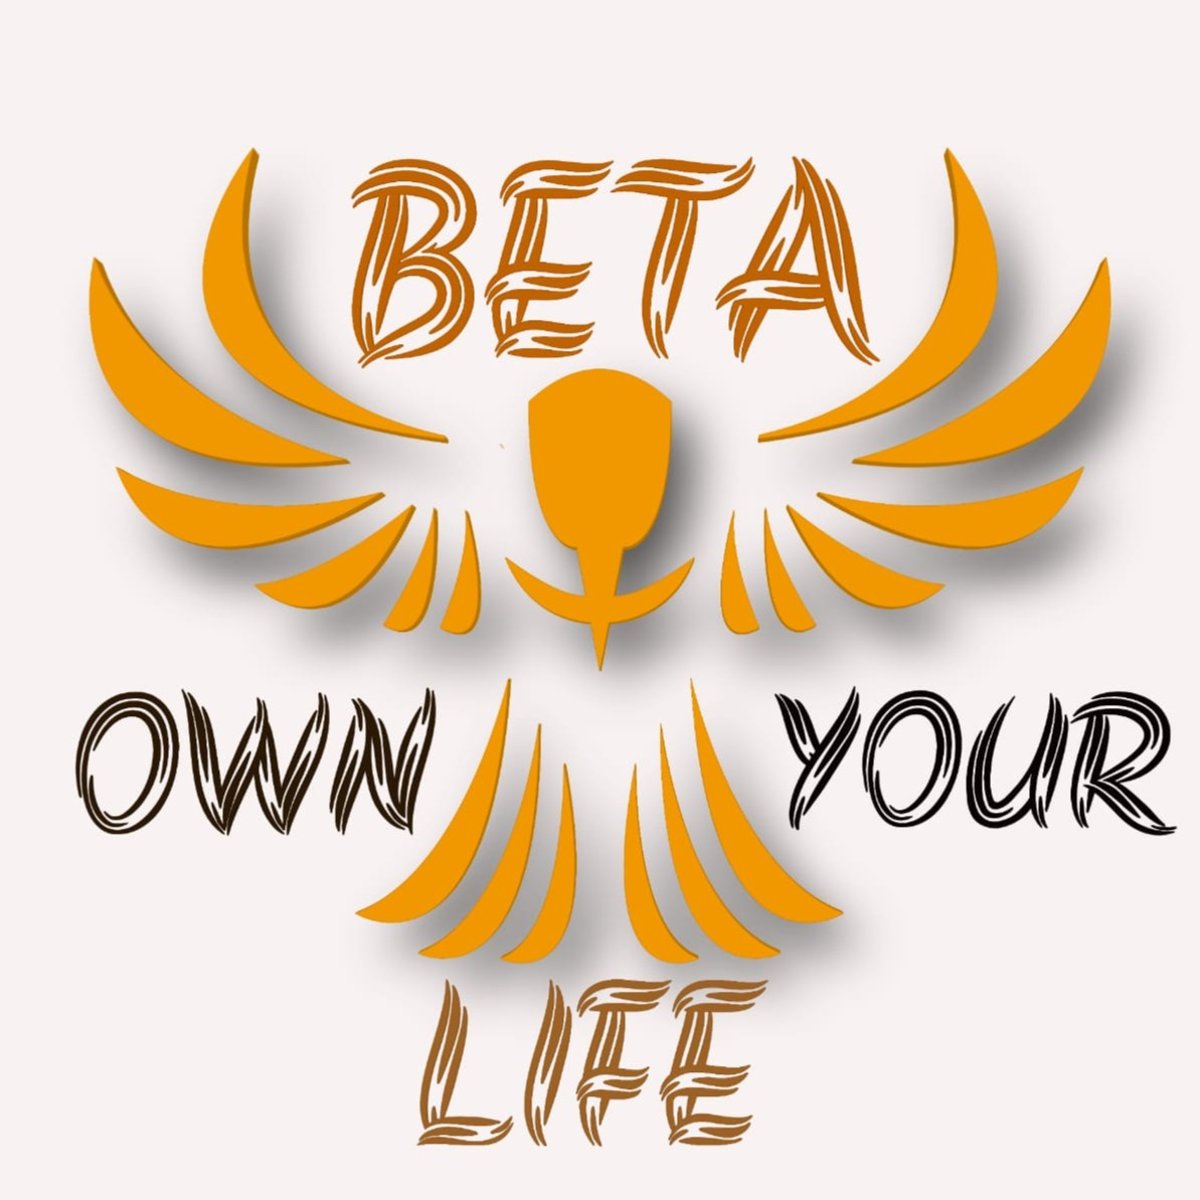 Dự án sở hữu cuộc sống của Beta đã chứng tỏ thành công trong việc giúp người dân sở hữu một cuộc sống đầy đủ và hạnh phúc. Được xây dựng với đầy đủ tiện nghi, không gian xanh và an ninh đảm bảo, Beta Own Your Life Project sẽ là nơi tốt nhất cho những ai muốn sở hữu một cuộc sống thịnh vượng.